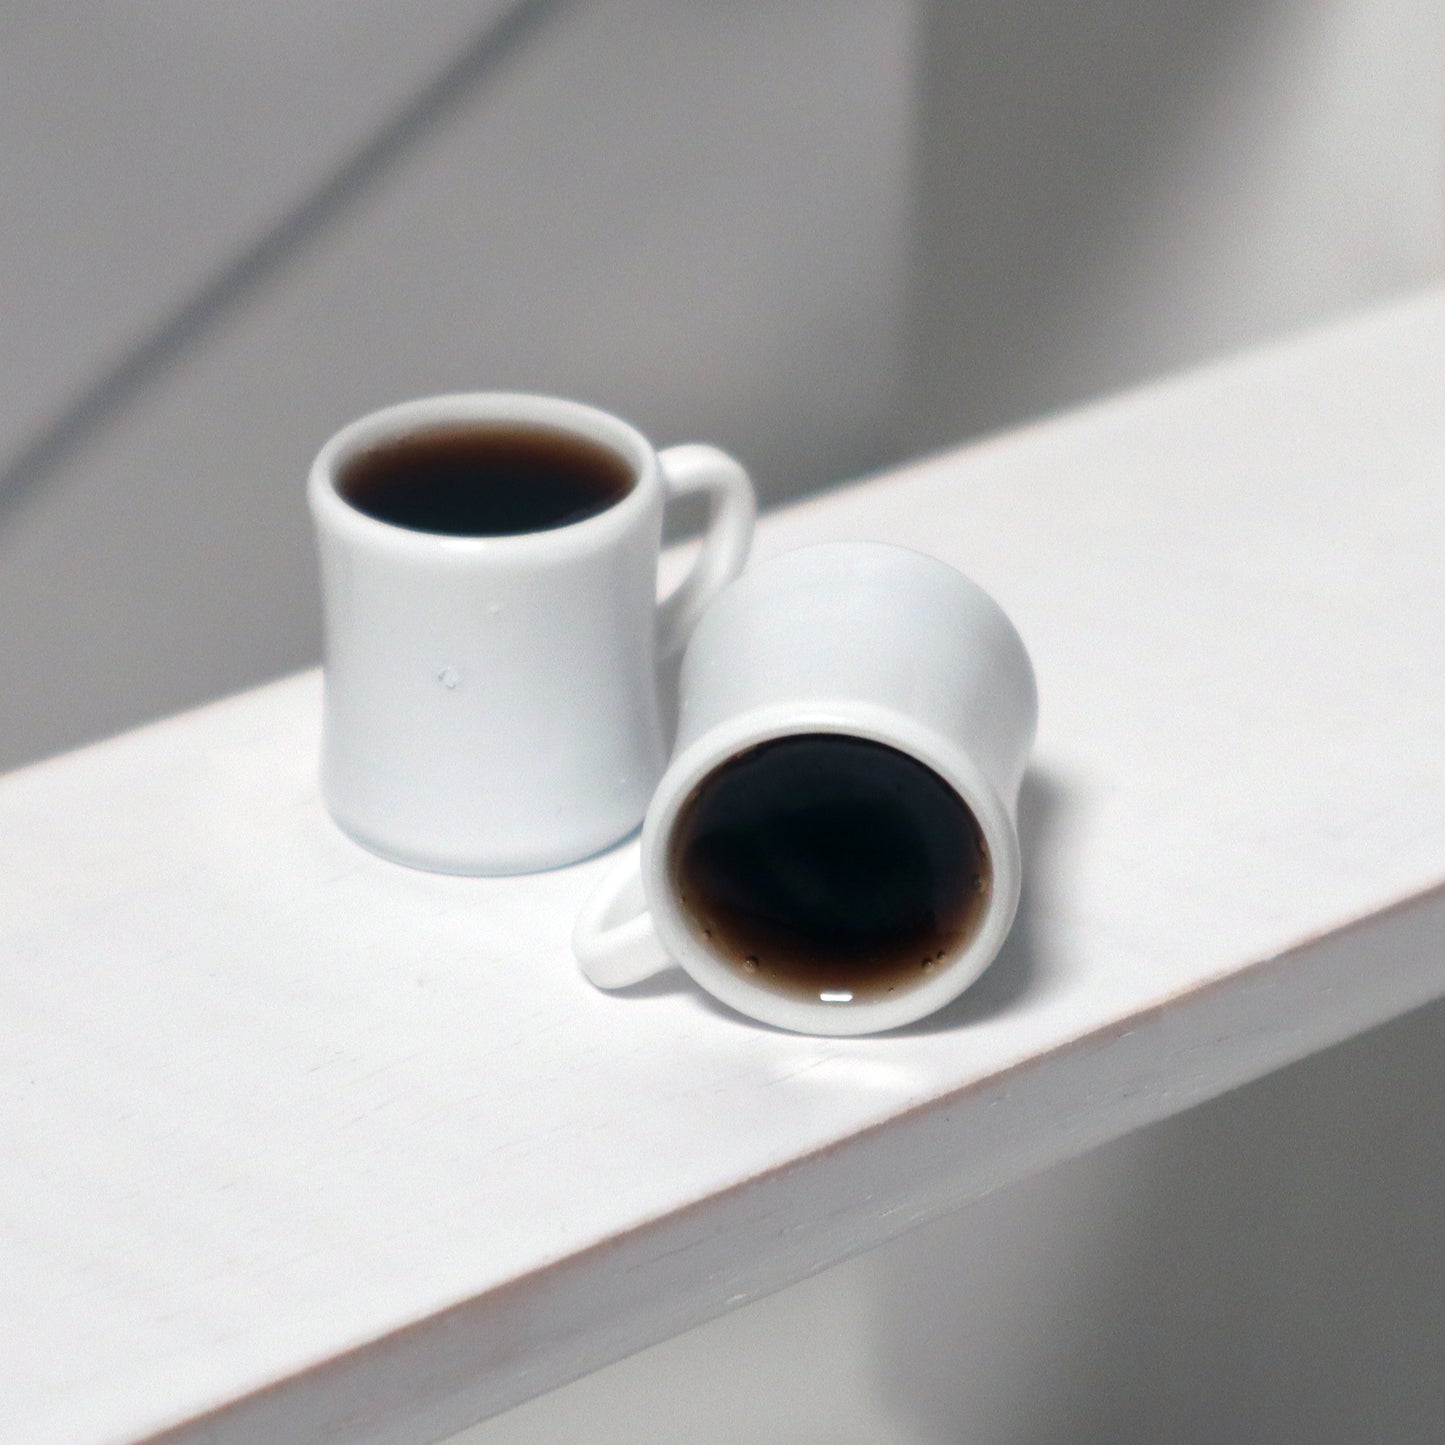 1/4 scale props for BJDs - Retro Diner Mug w/ Black Coffee